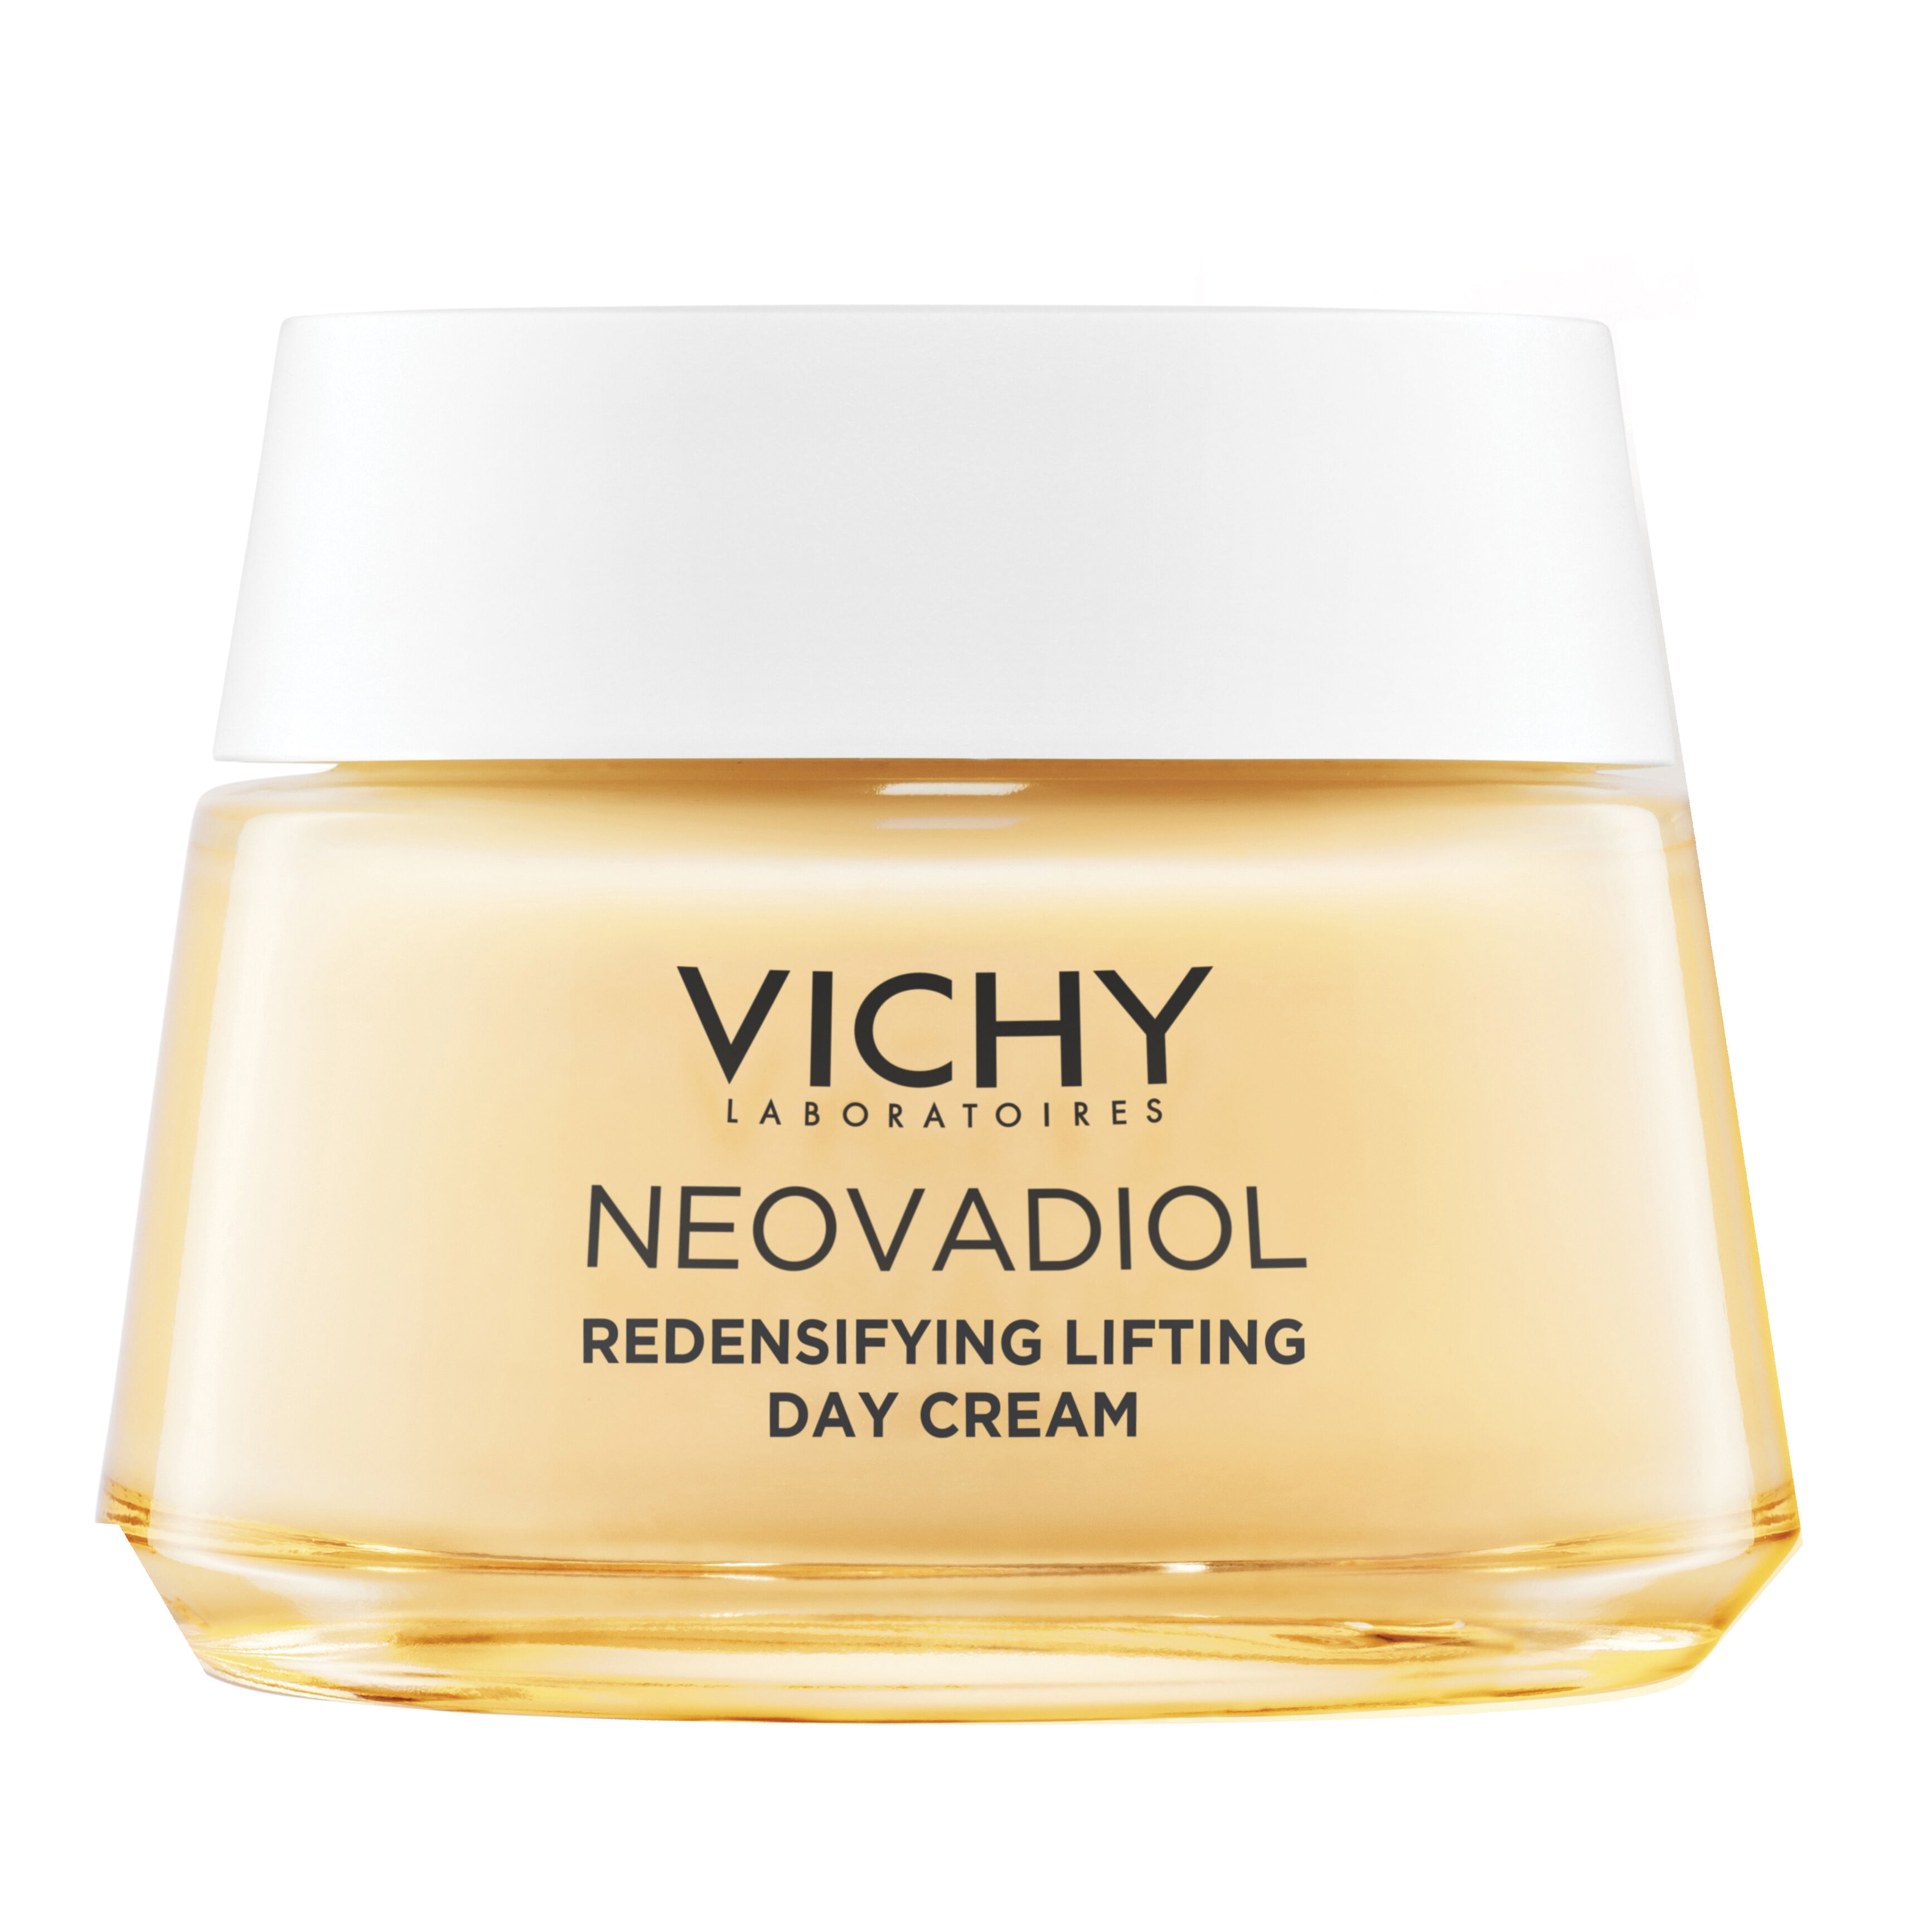 Vichy Neovadiol peri-menopause day pelli secche 50 ml